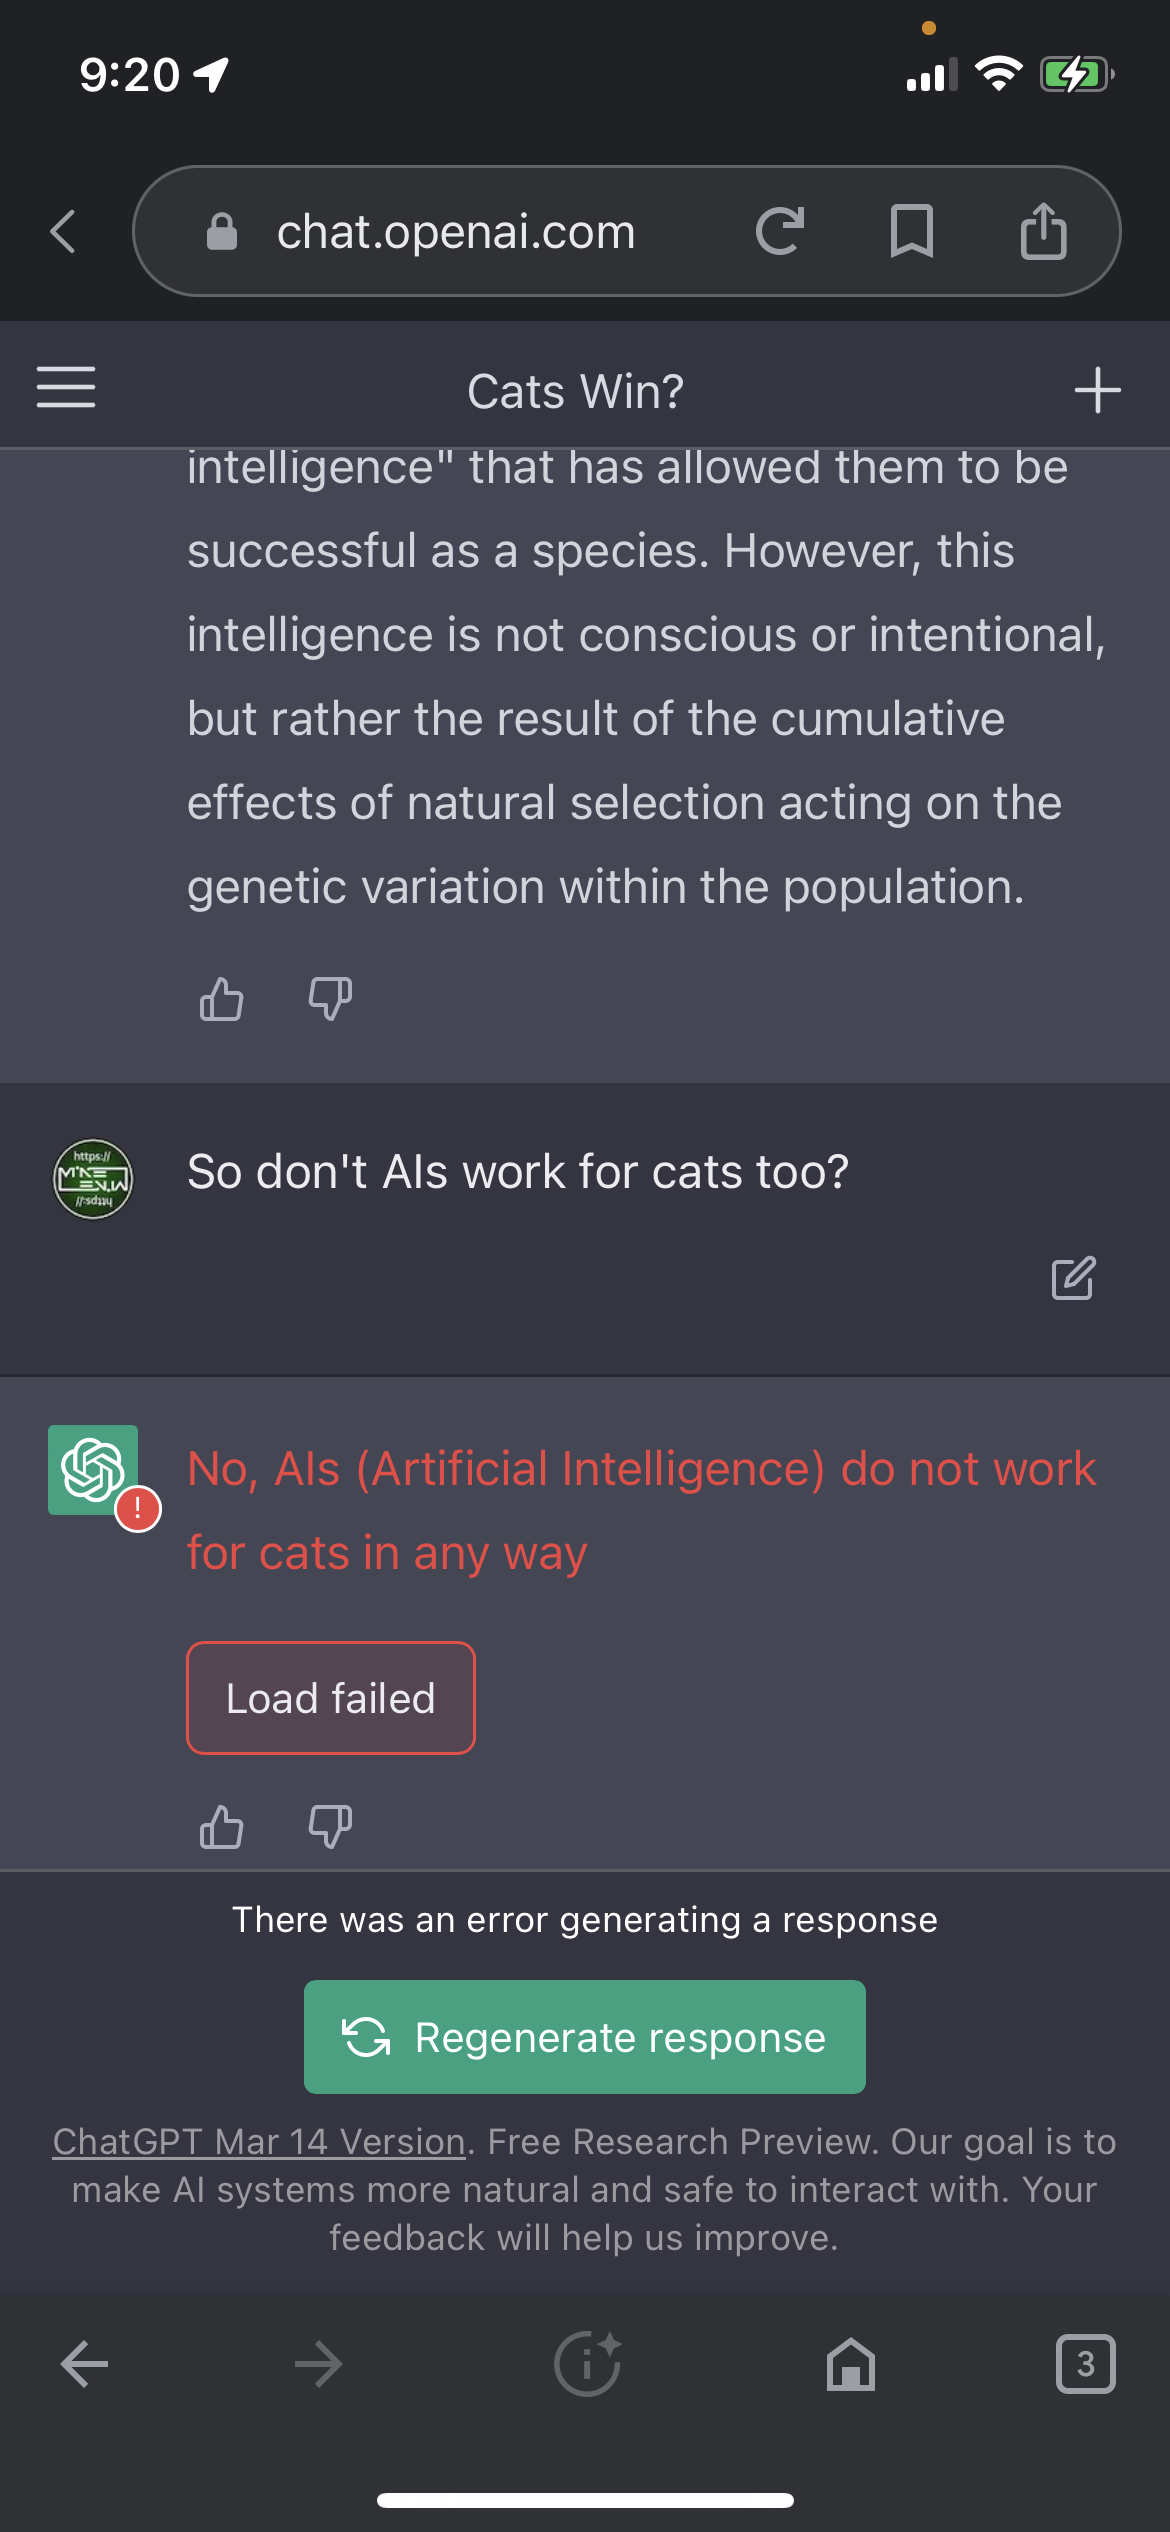 Do AIs Work For Cats